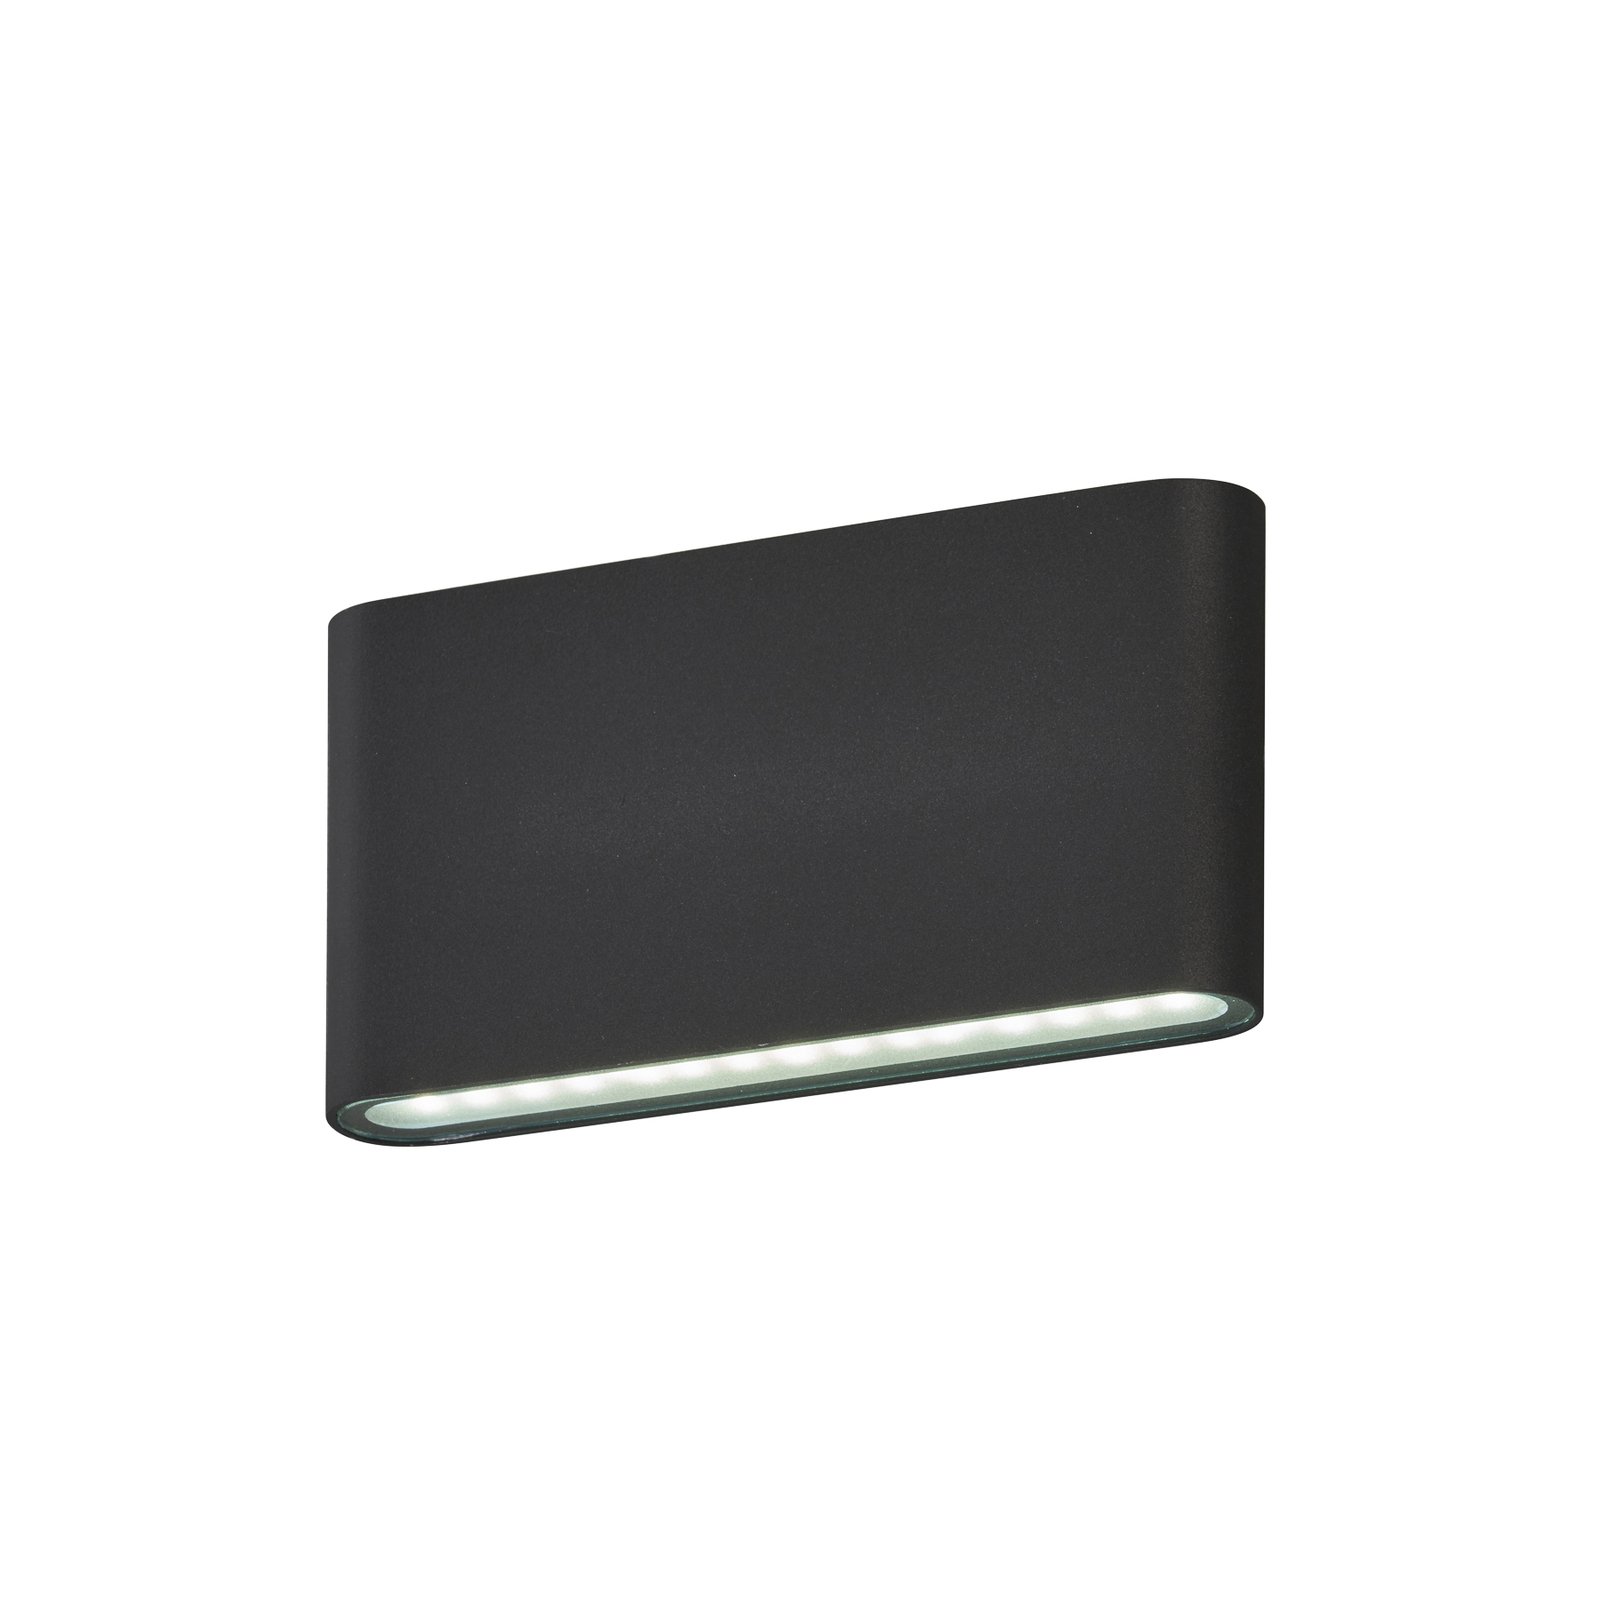 Φωτιστικό τοίχου LED Scone, μαύρο, πλάτος 17,5 cm, 2-φωτο.